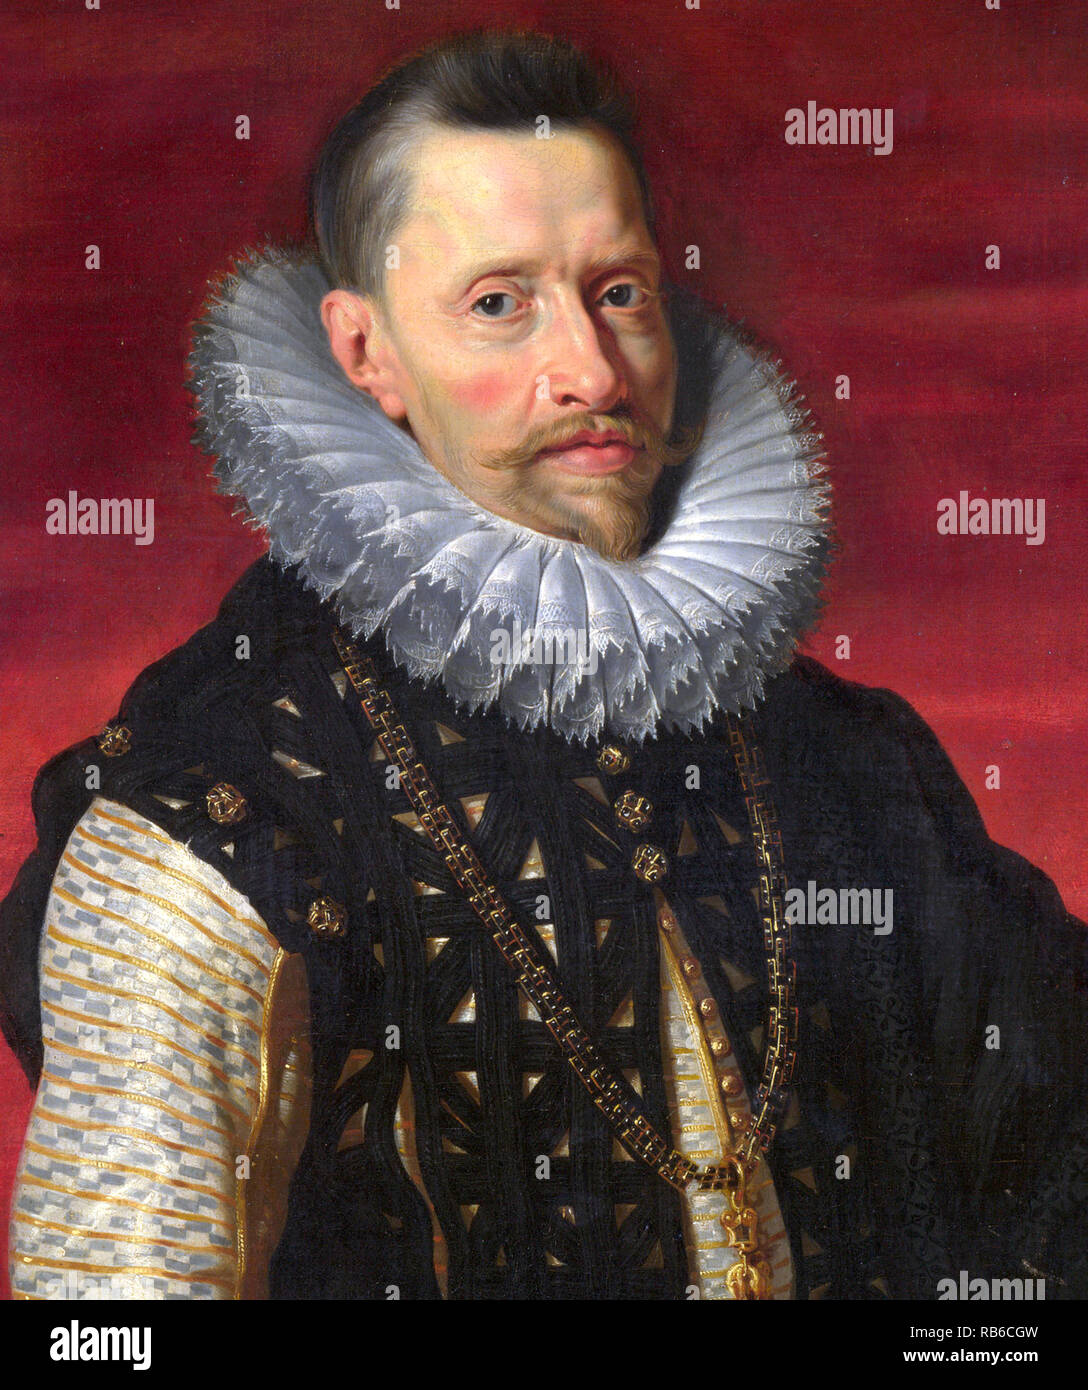 Albert VII (1559 - 1621) el Archiduque de Austria durante unos meses en 1619 y, junto con su esposa, Isabella, soberano de los Habsburgo en los Países Bajos entre 1598 y 1621. Foto de stock